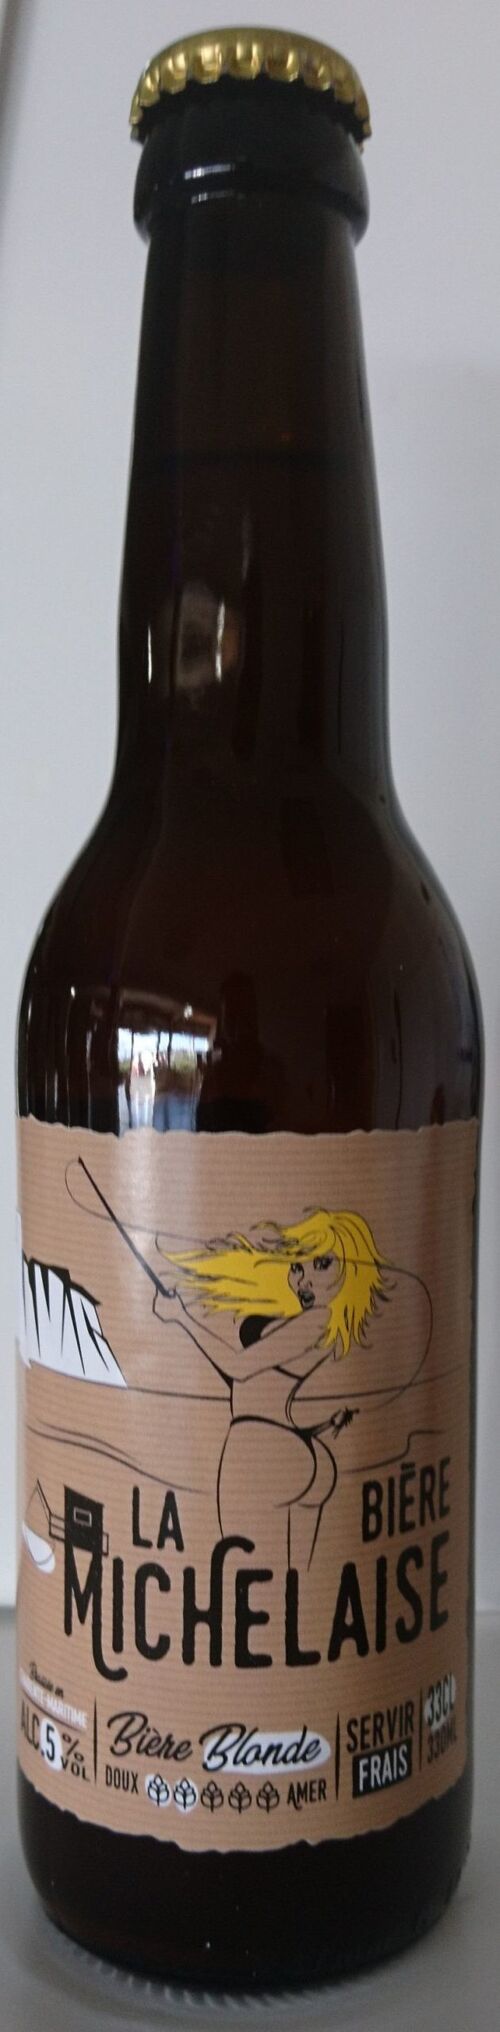 La Bière Michelaise Blonde 33cl